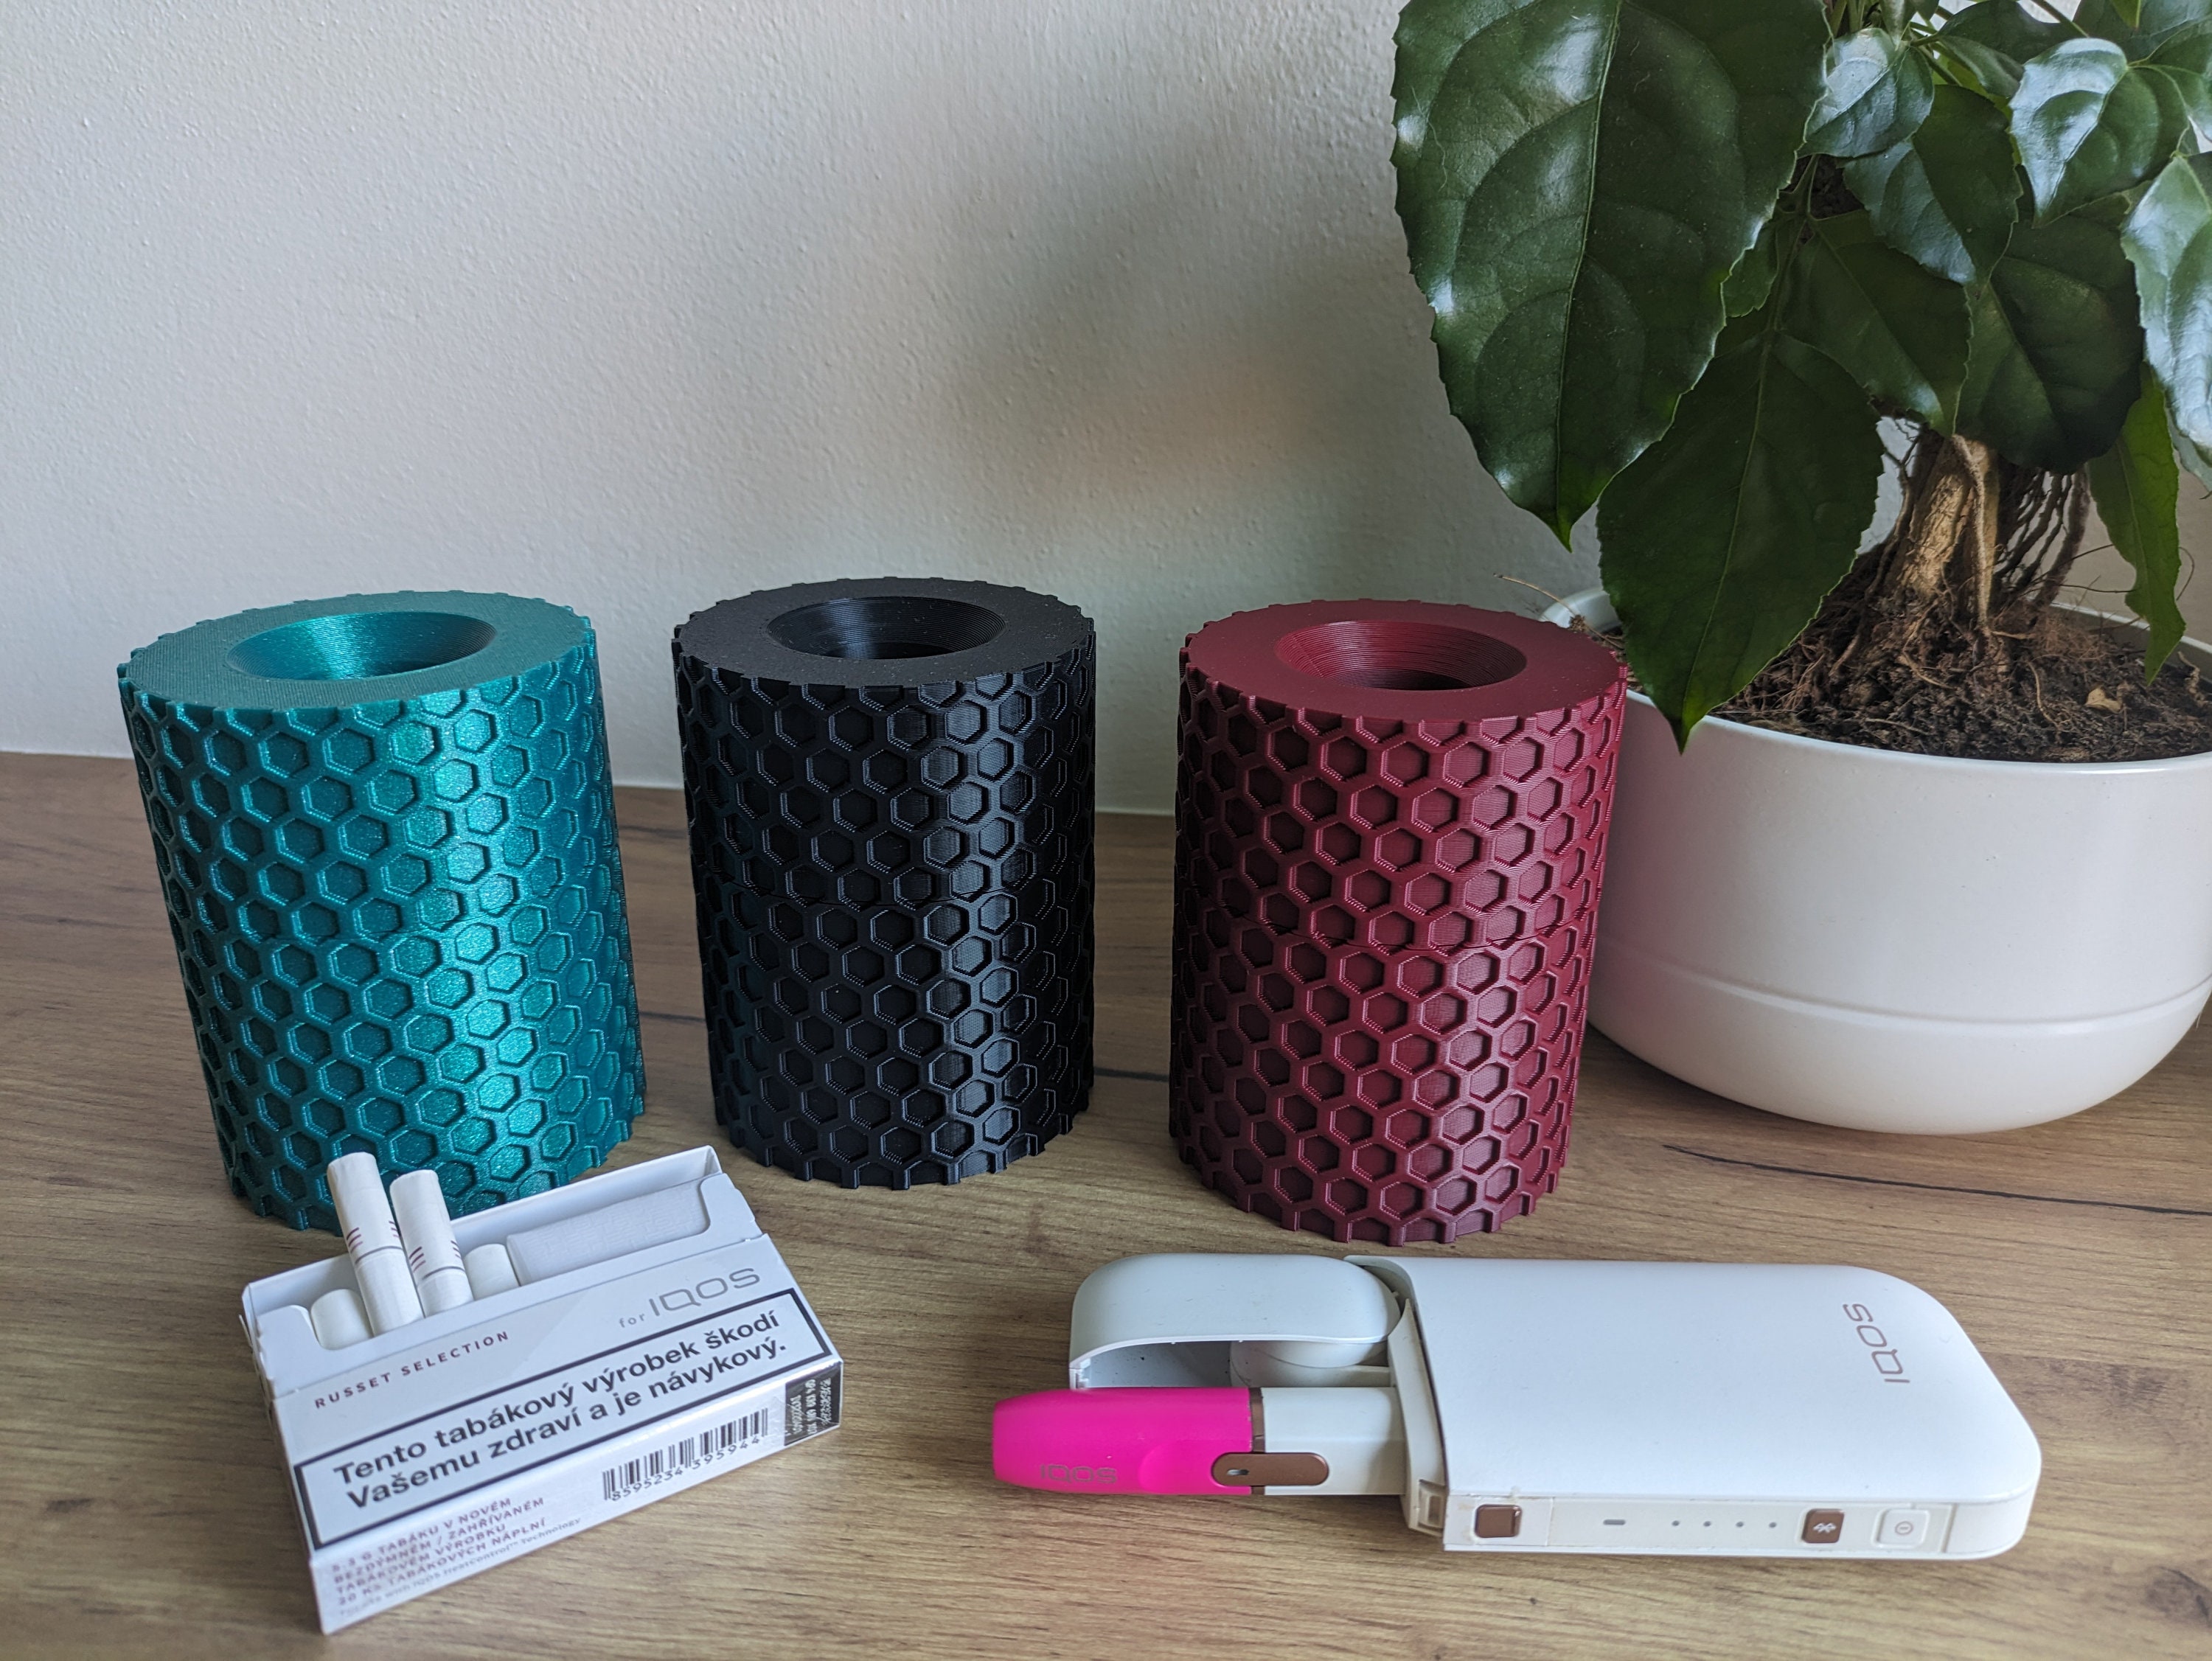 4 Farben] e-smoQ Aschenbecher für HEETS IQOS 3 Duo Starterset, Iluma Terea,  Tray für Tabak Sticks, Zubehör für Auto mit Deckel geruchsdicht  (schwarz/grau) : : Küche, Haushalt & Wohnen